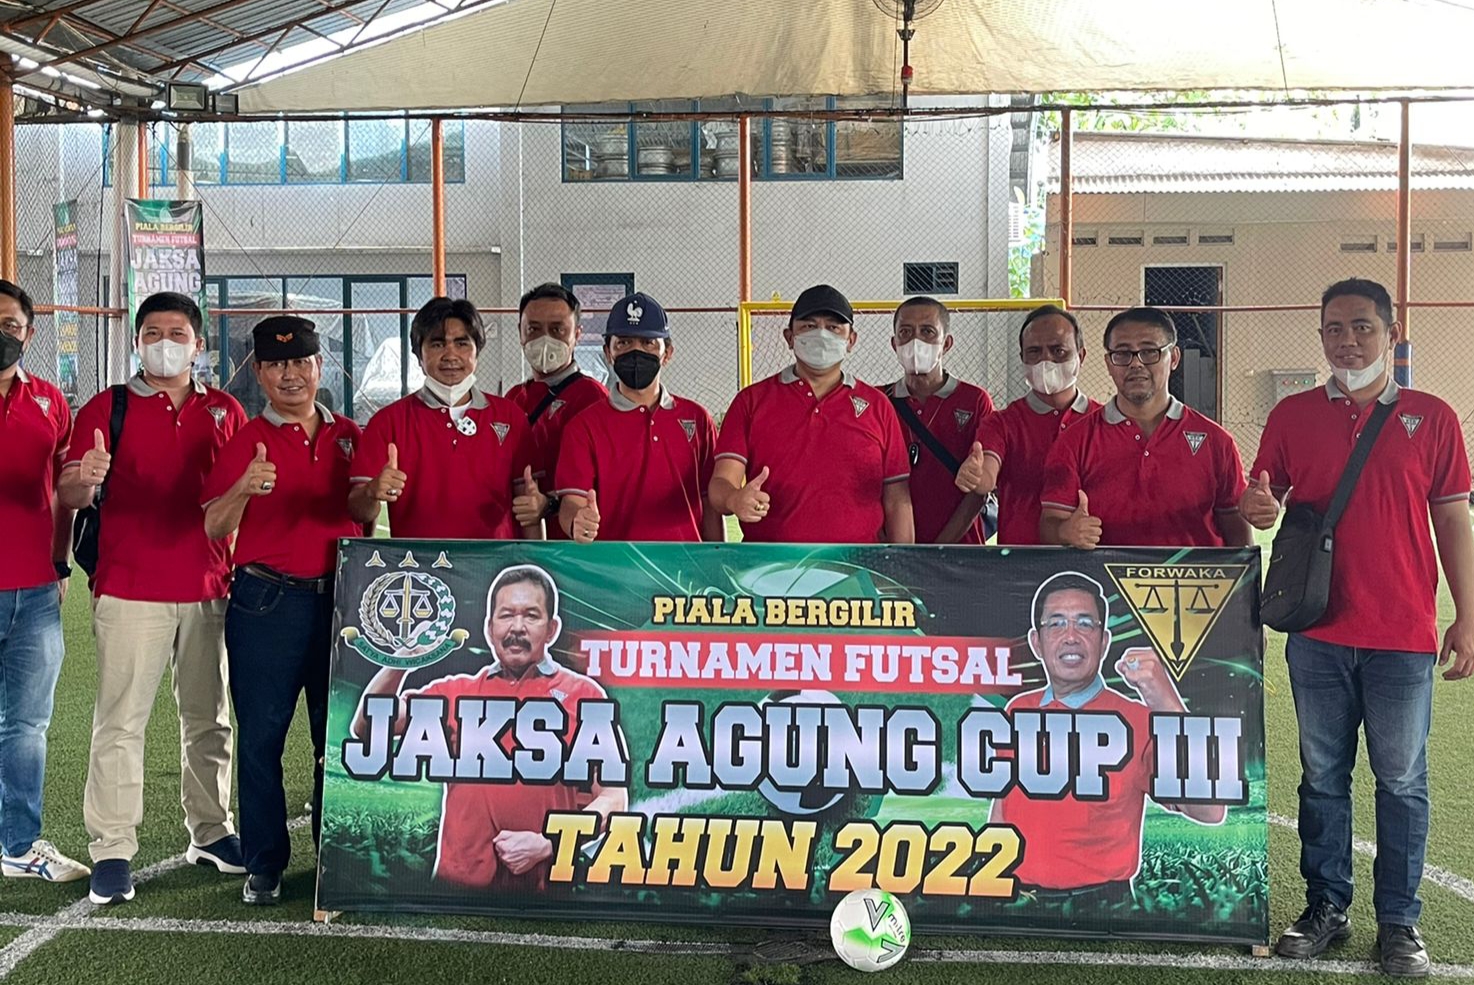 Buka Turnamen Futsal Jaksa Agung Cup III, Ketut Sumedana Minta Wartawan Jalin Komunikasi Positif dengan APH